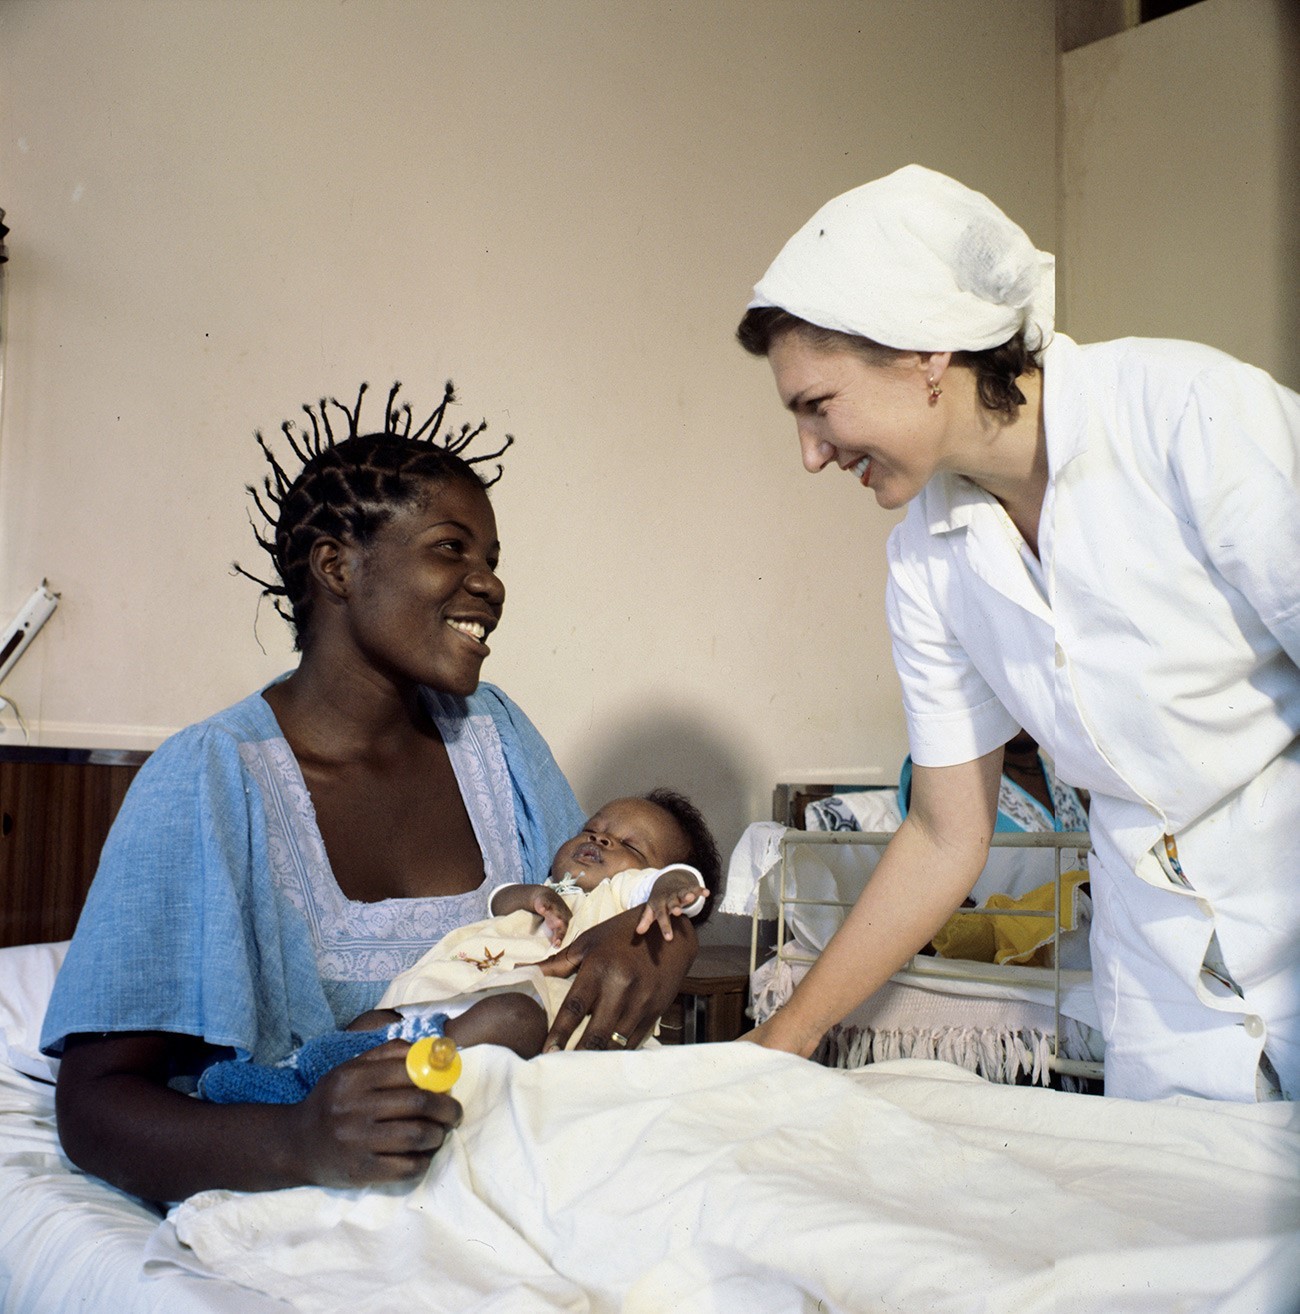 Med drugim je Sovjetska zveza pomagala Afriki z zdravniki. Tukaj vidimo sovjetsko medicinsko sestro v Lubangu v Angoli.

